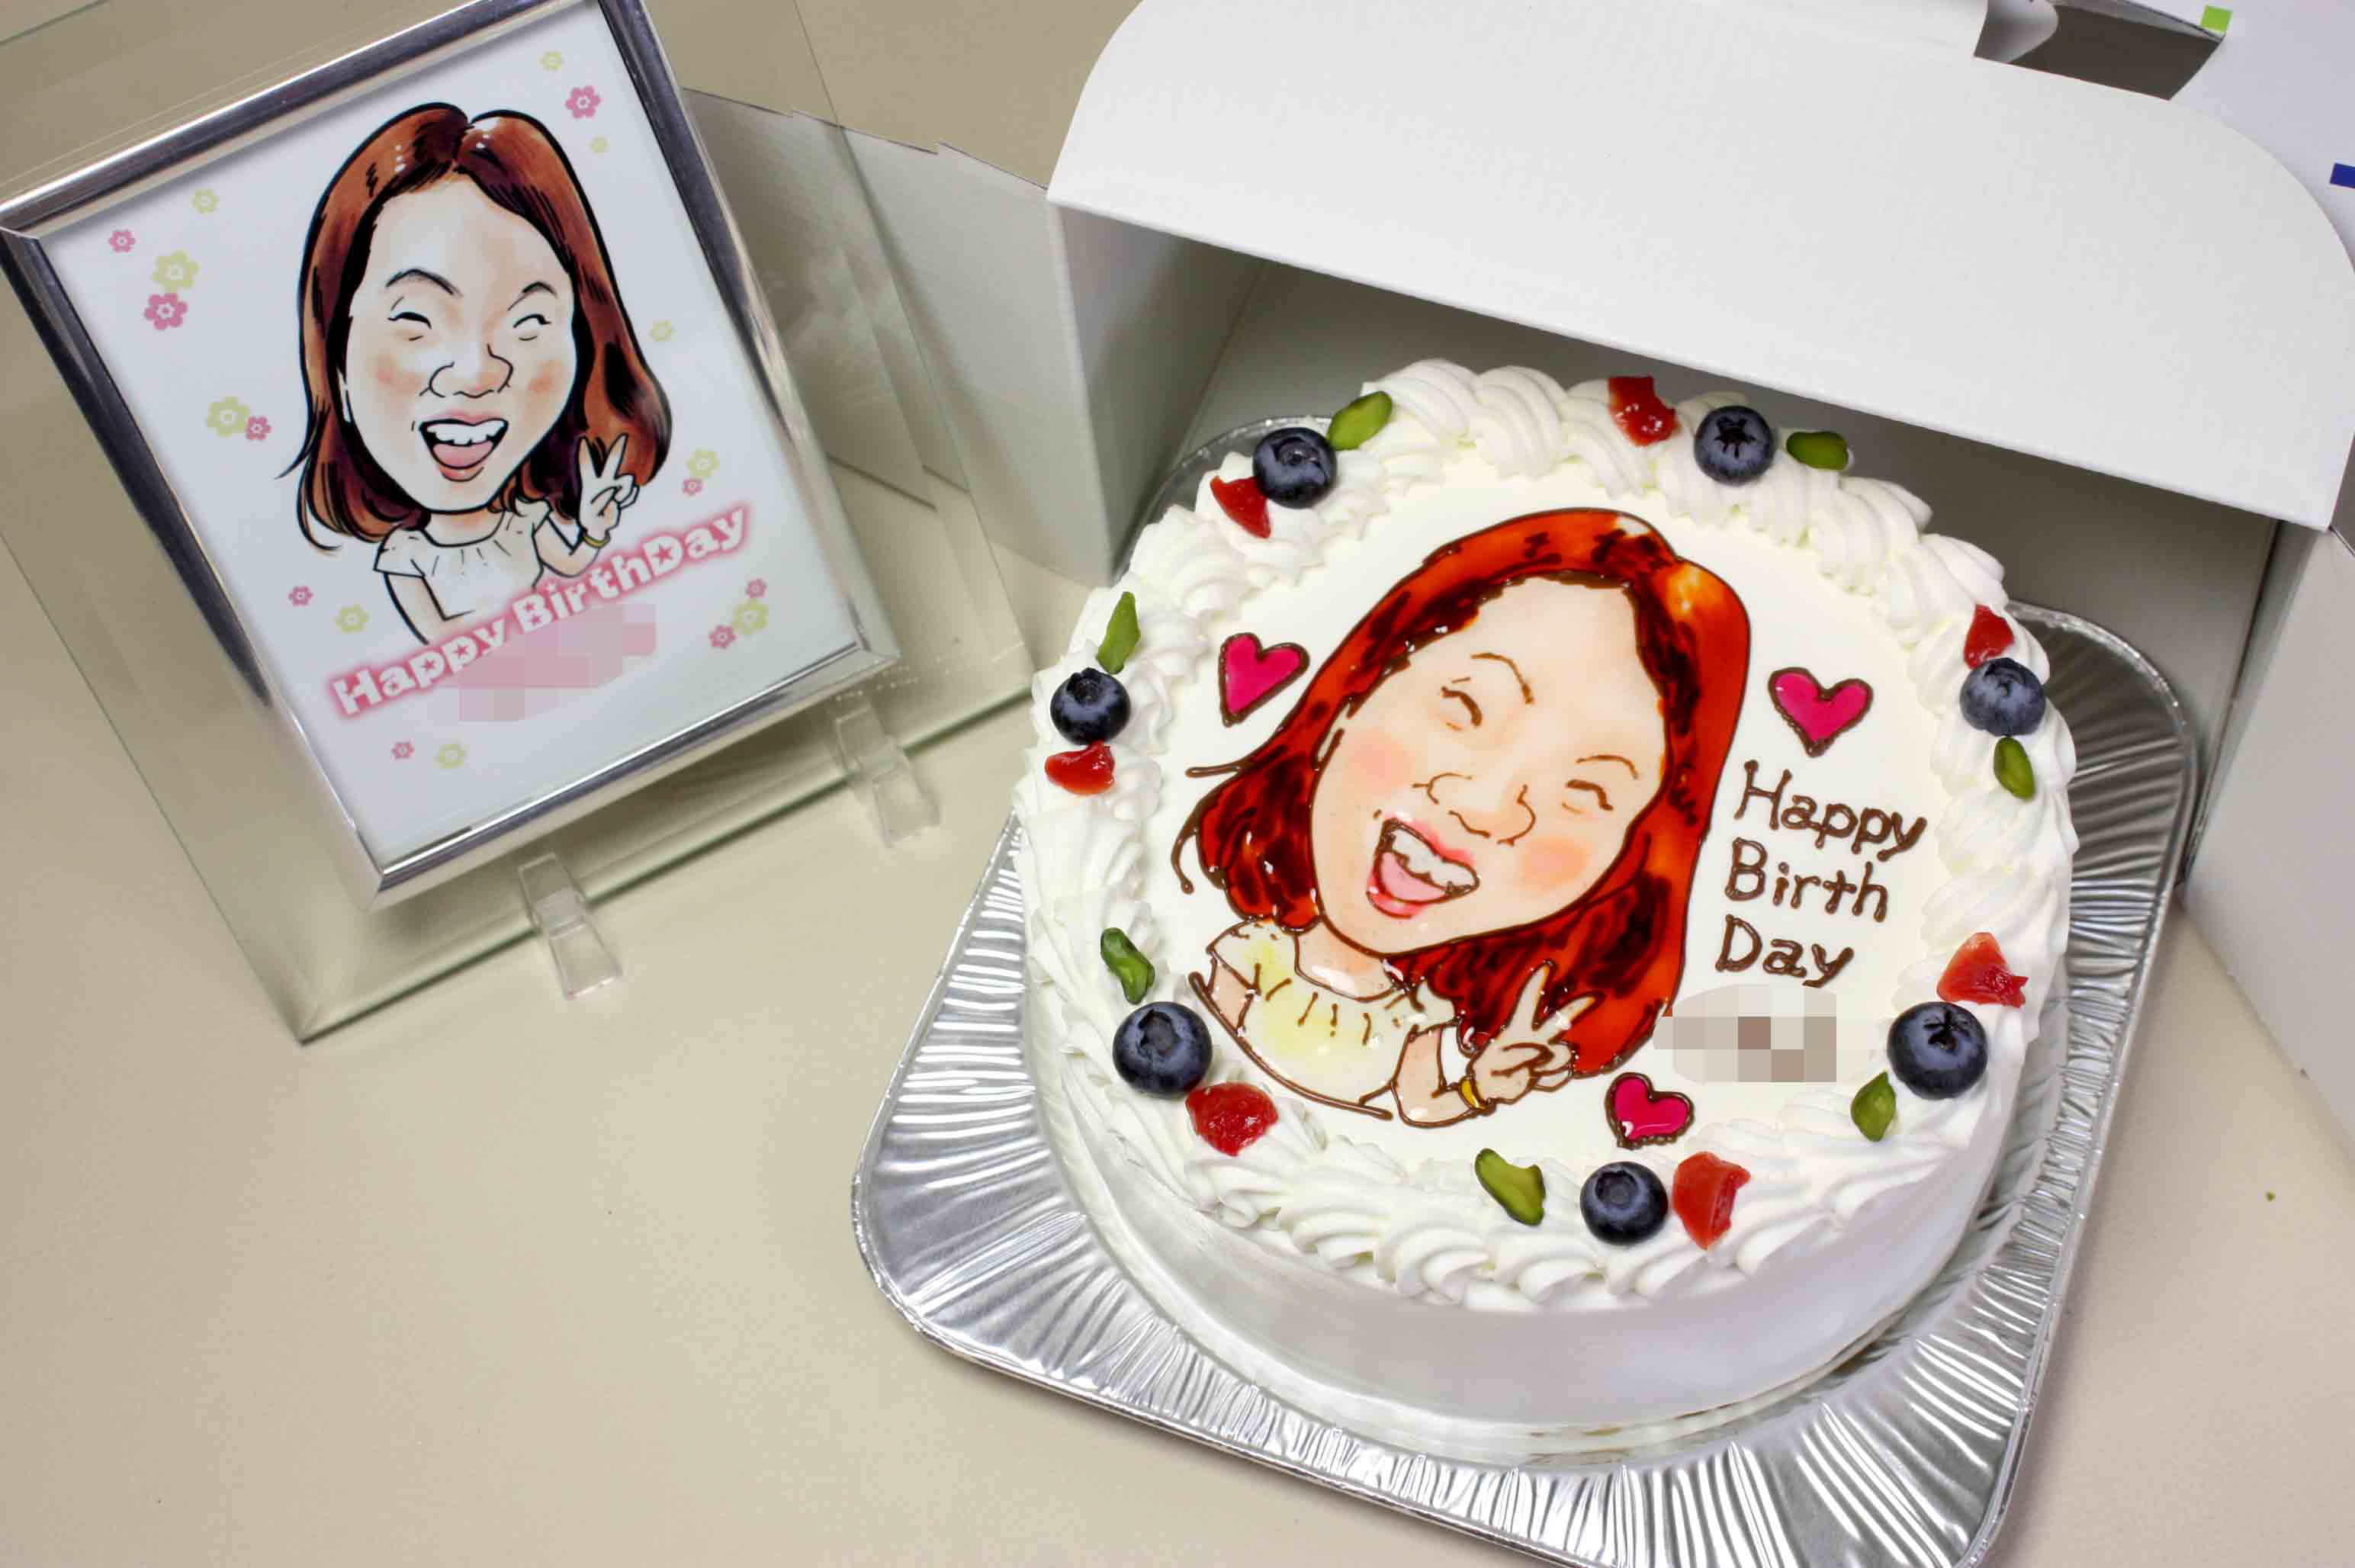 レンダリング うぬぼれた マルコポーロ デコレーション ケーキ 似顔絵 Fans Ent Jp